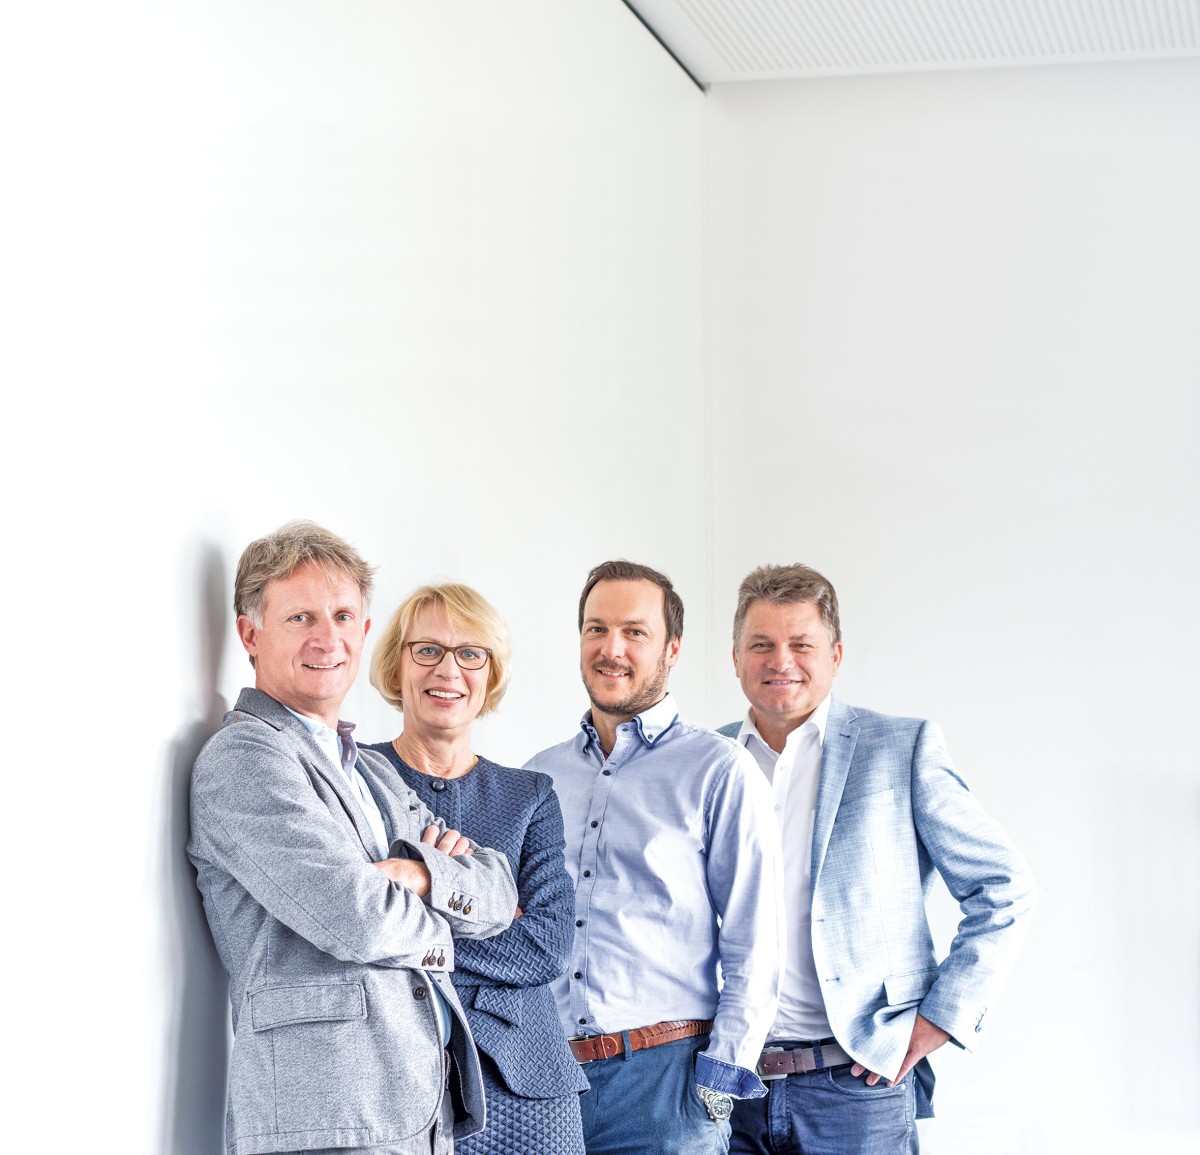 Das Management Team: Jürgen Lofi, Bärbel Maempel, Andreas Hofherr, Bernd Schlenker (v. l.).